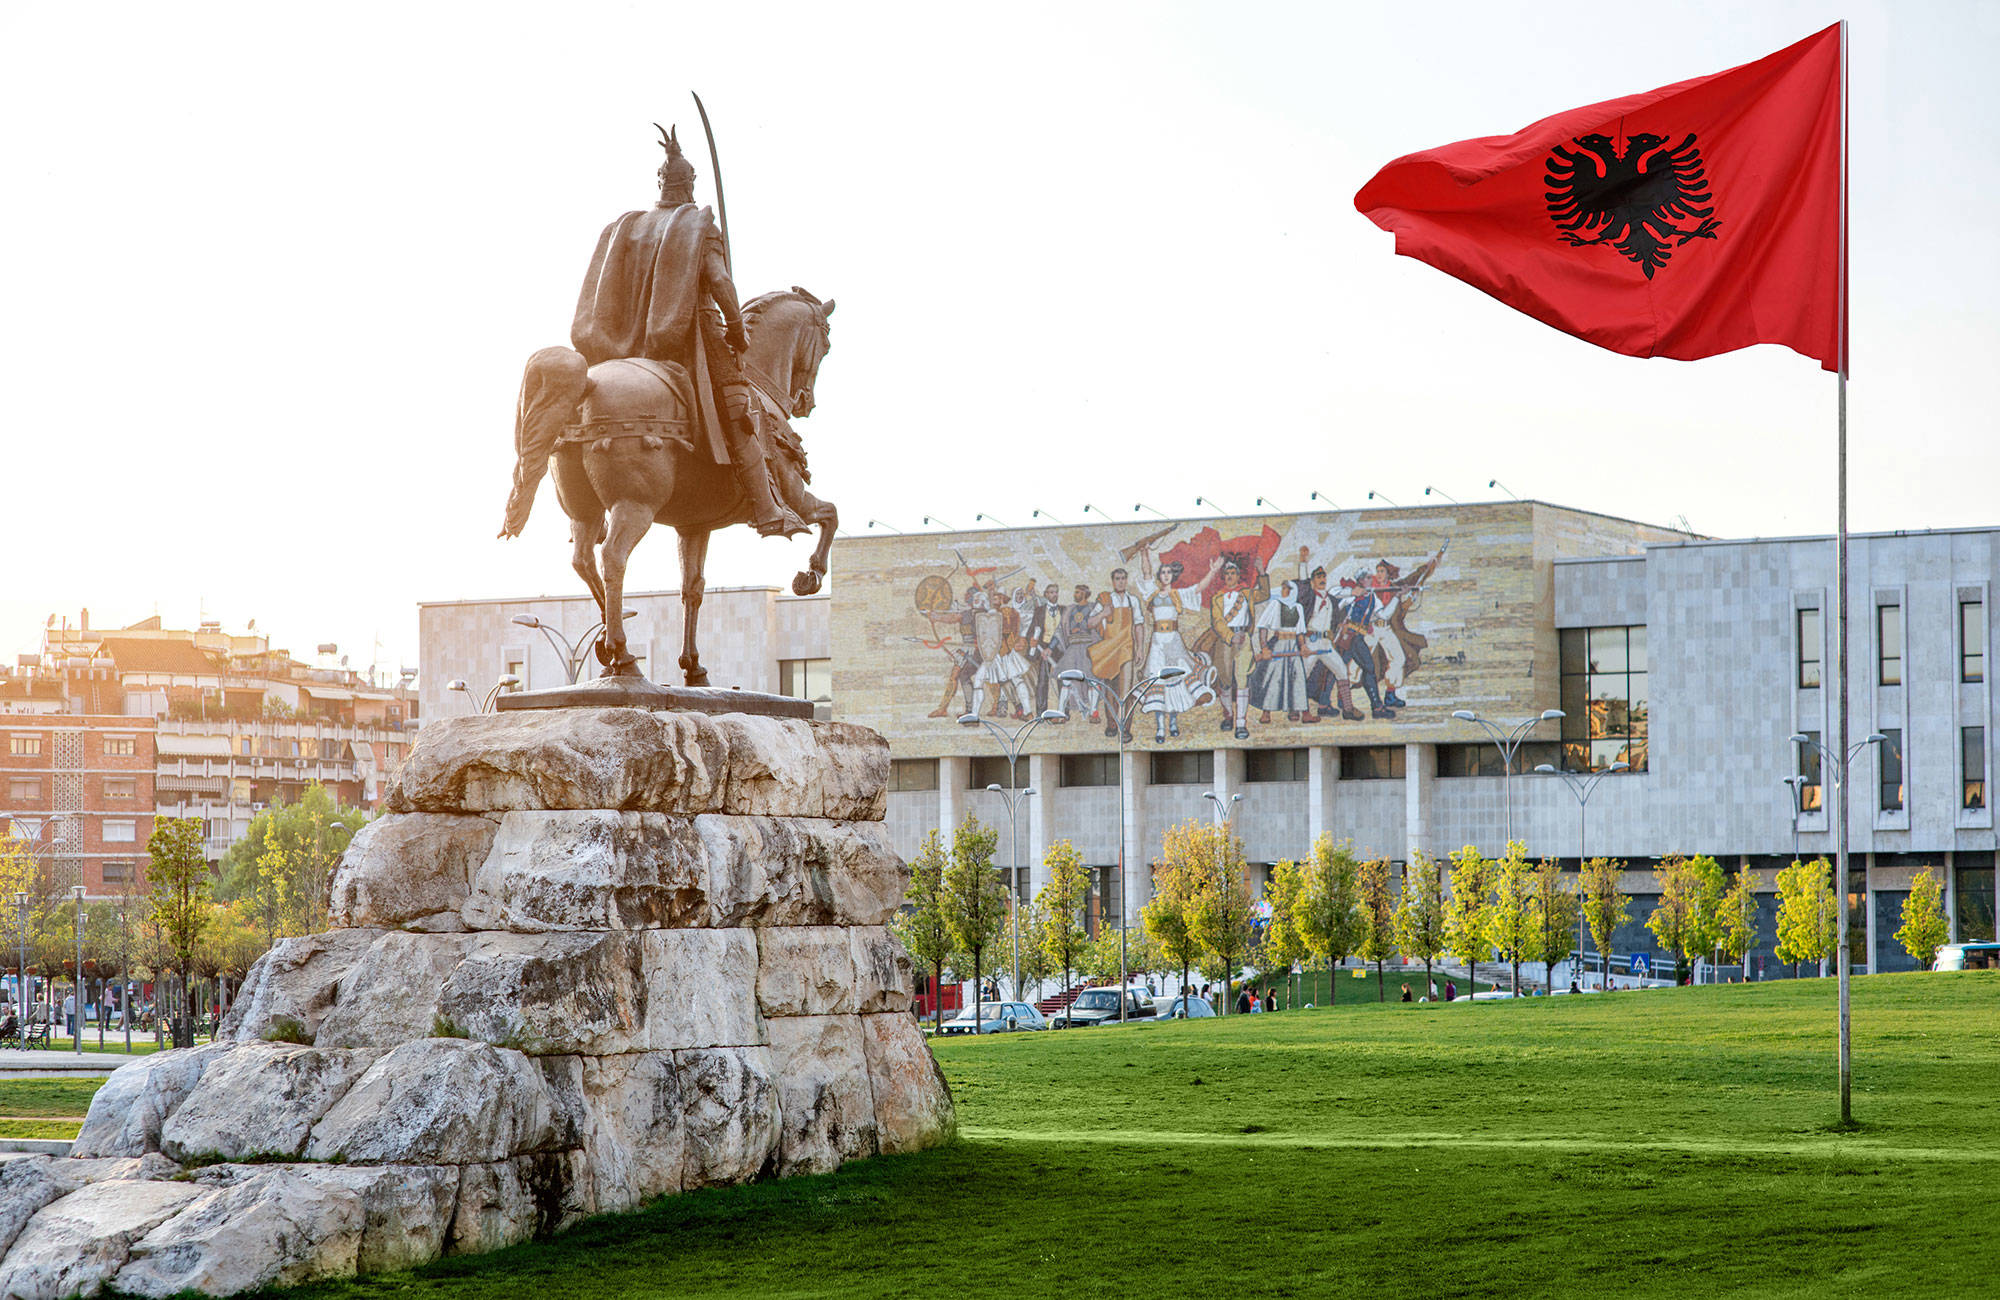 albaniens flagga och statyer kommer du se mycket utav under resan